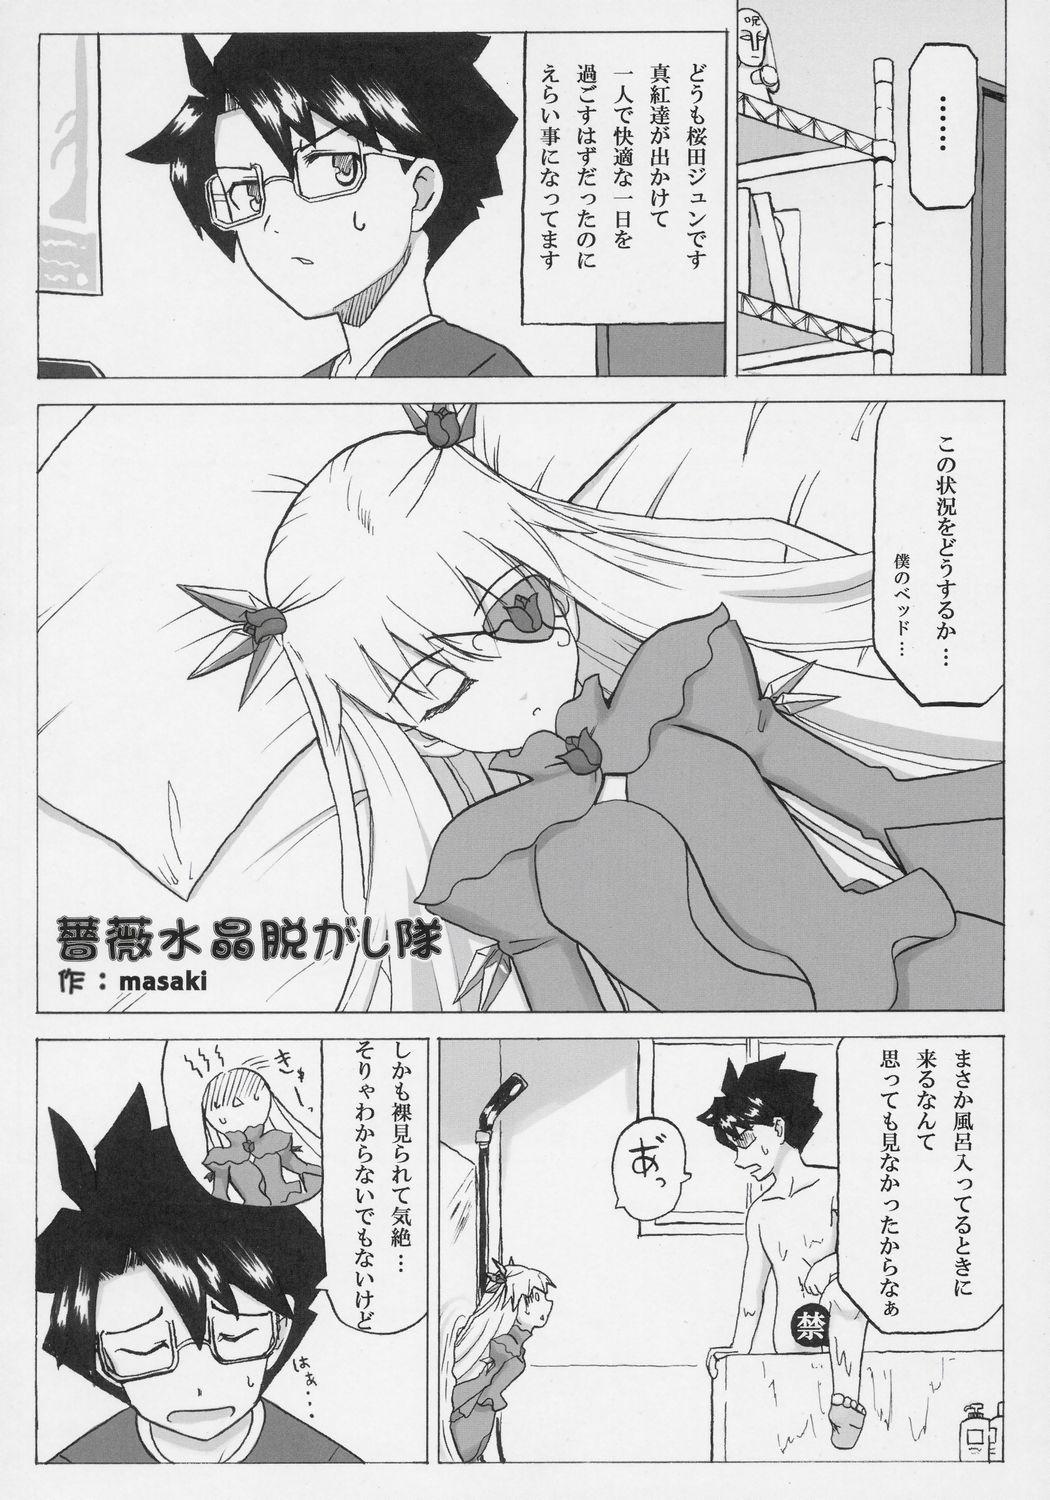 Lovers - Barabara wo okashitai no hon - Rozen maiden Fetish - Page 7